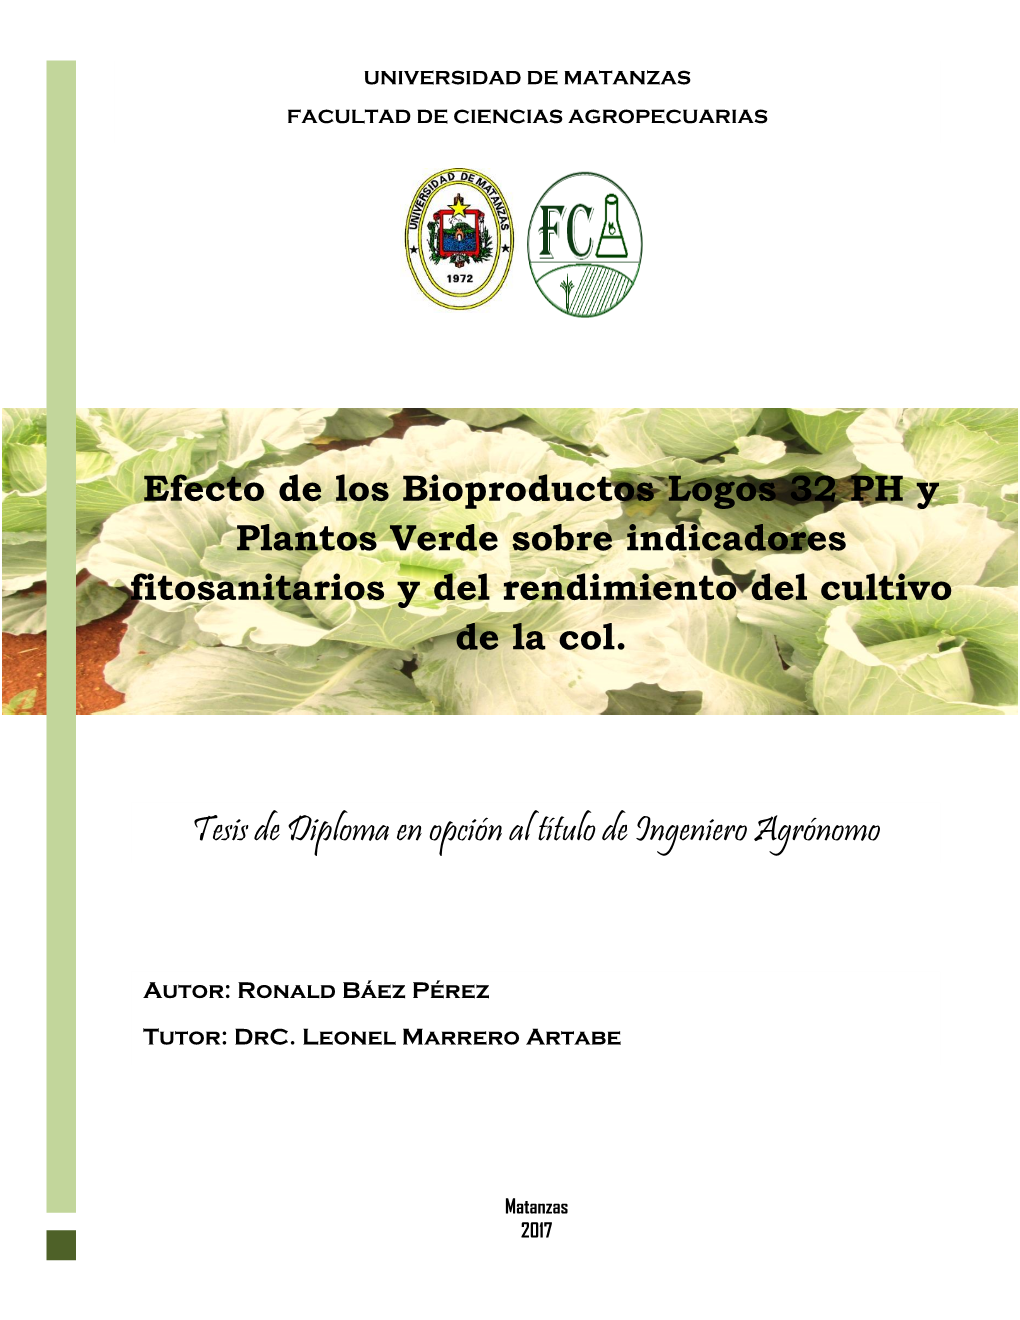 Efecto De Los Bioproductos Logos 32 PH Y Plantos Verde Sobre Indicadores Fitosanitarios Y Del Rendimiento Del Cultivo De La Col